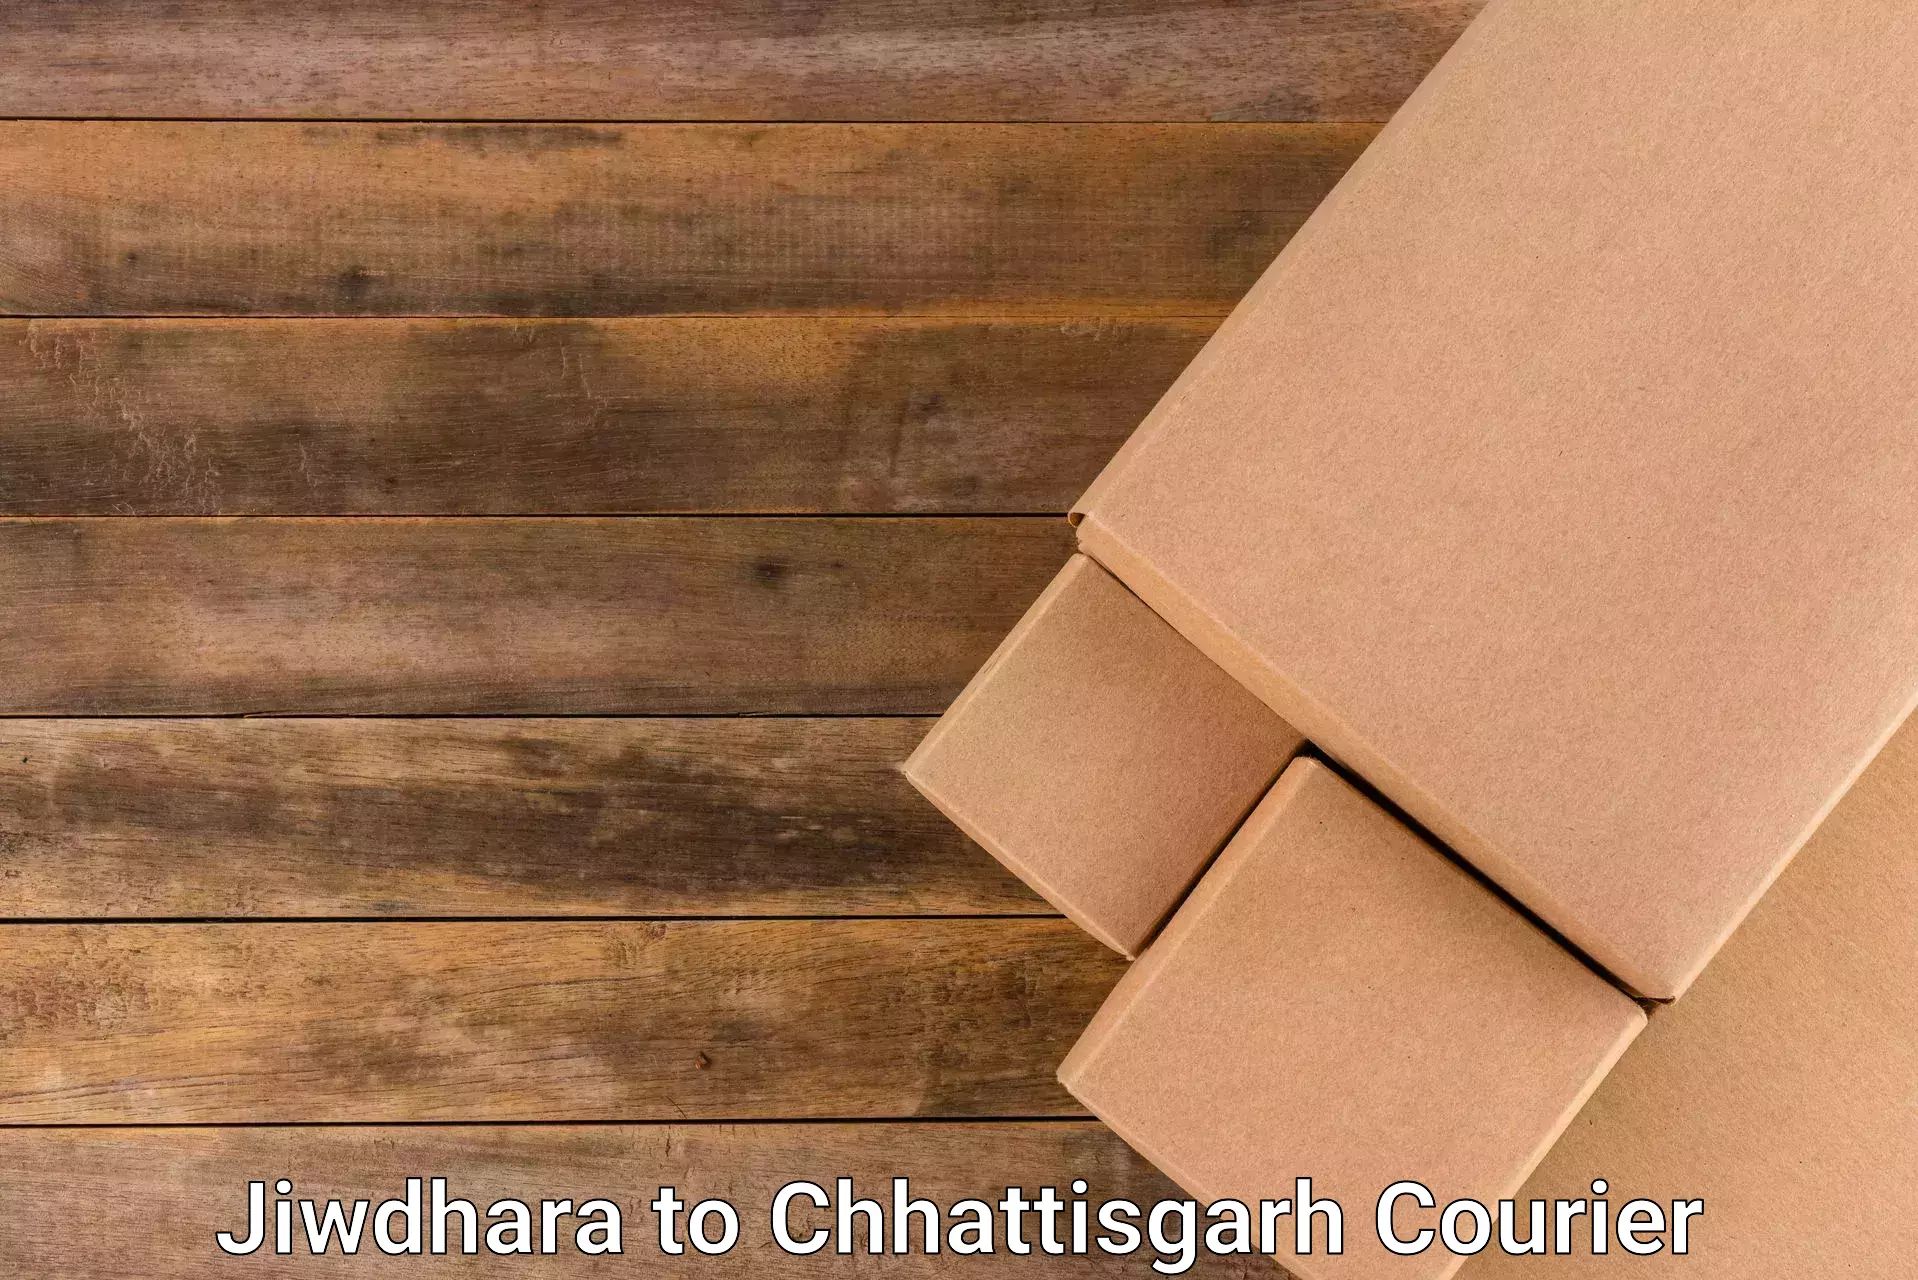 Delivery service partnership Jiwdhara to Mandhar